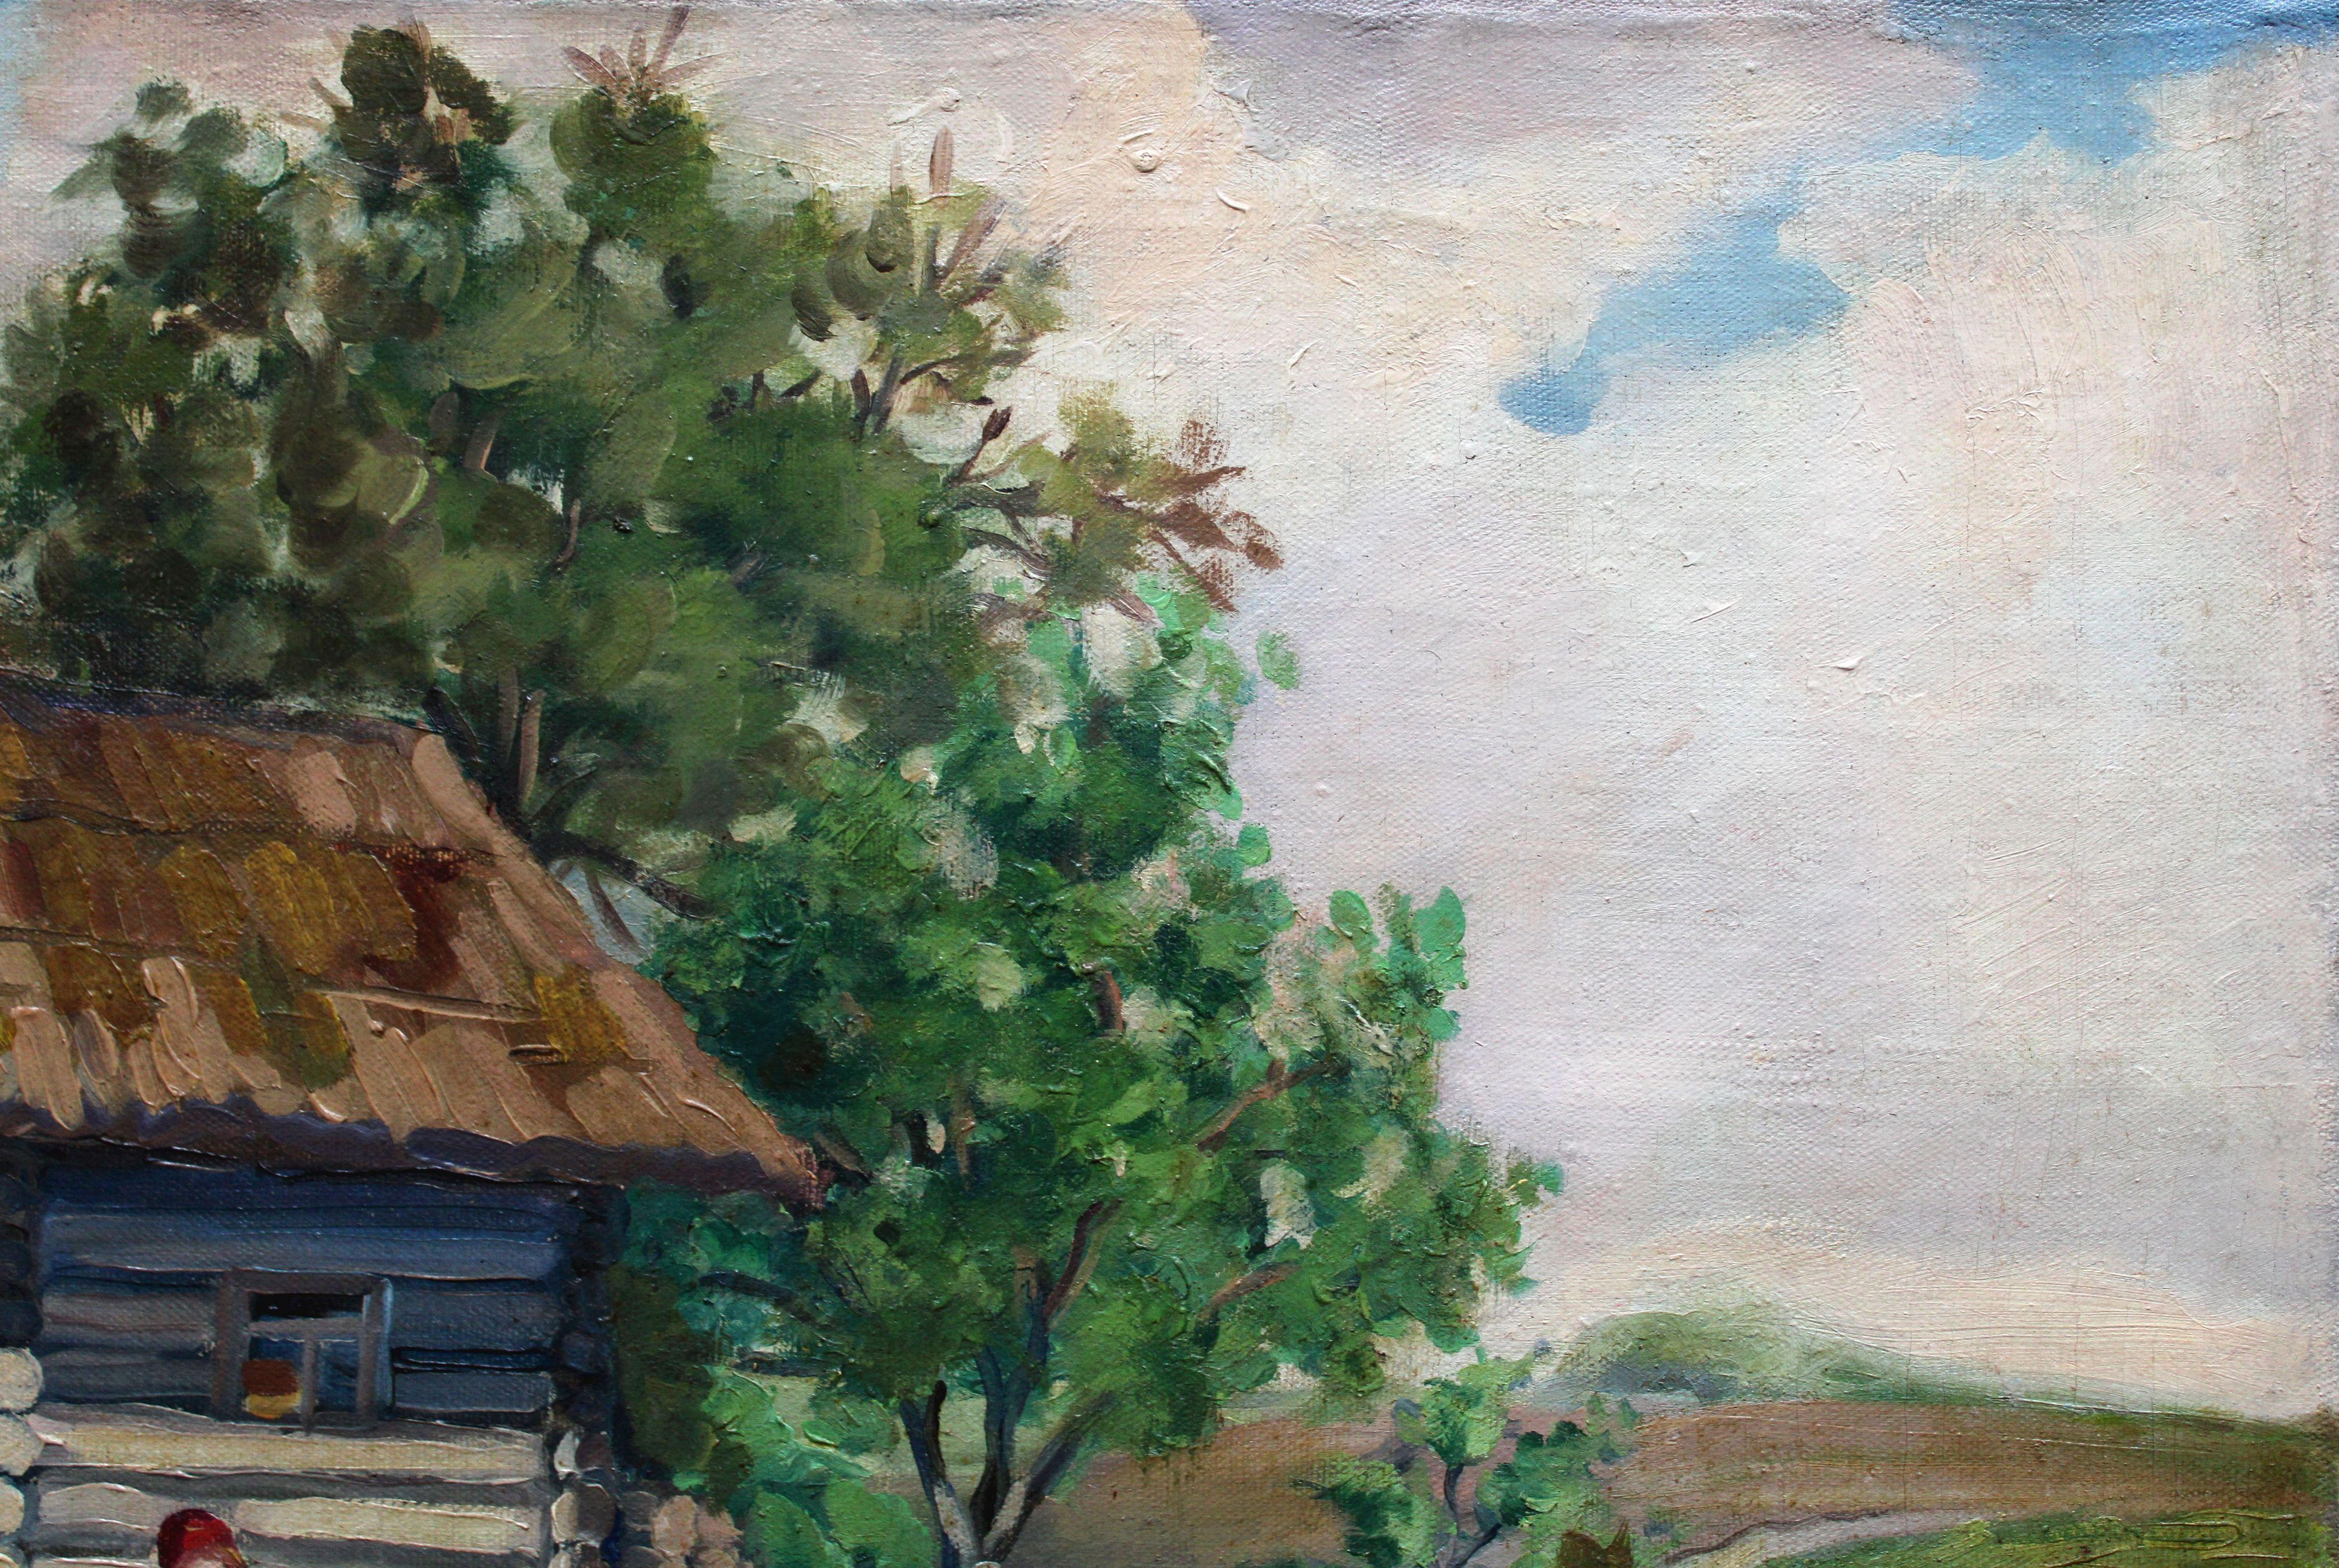 Old bath-house. Oil on canvas, 51, 5 x 64, 7 cm

